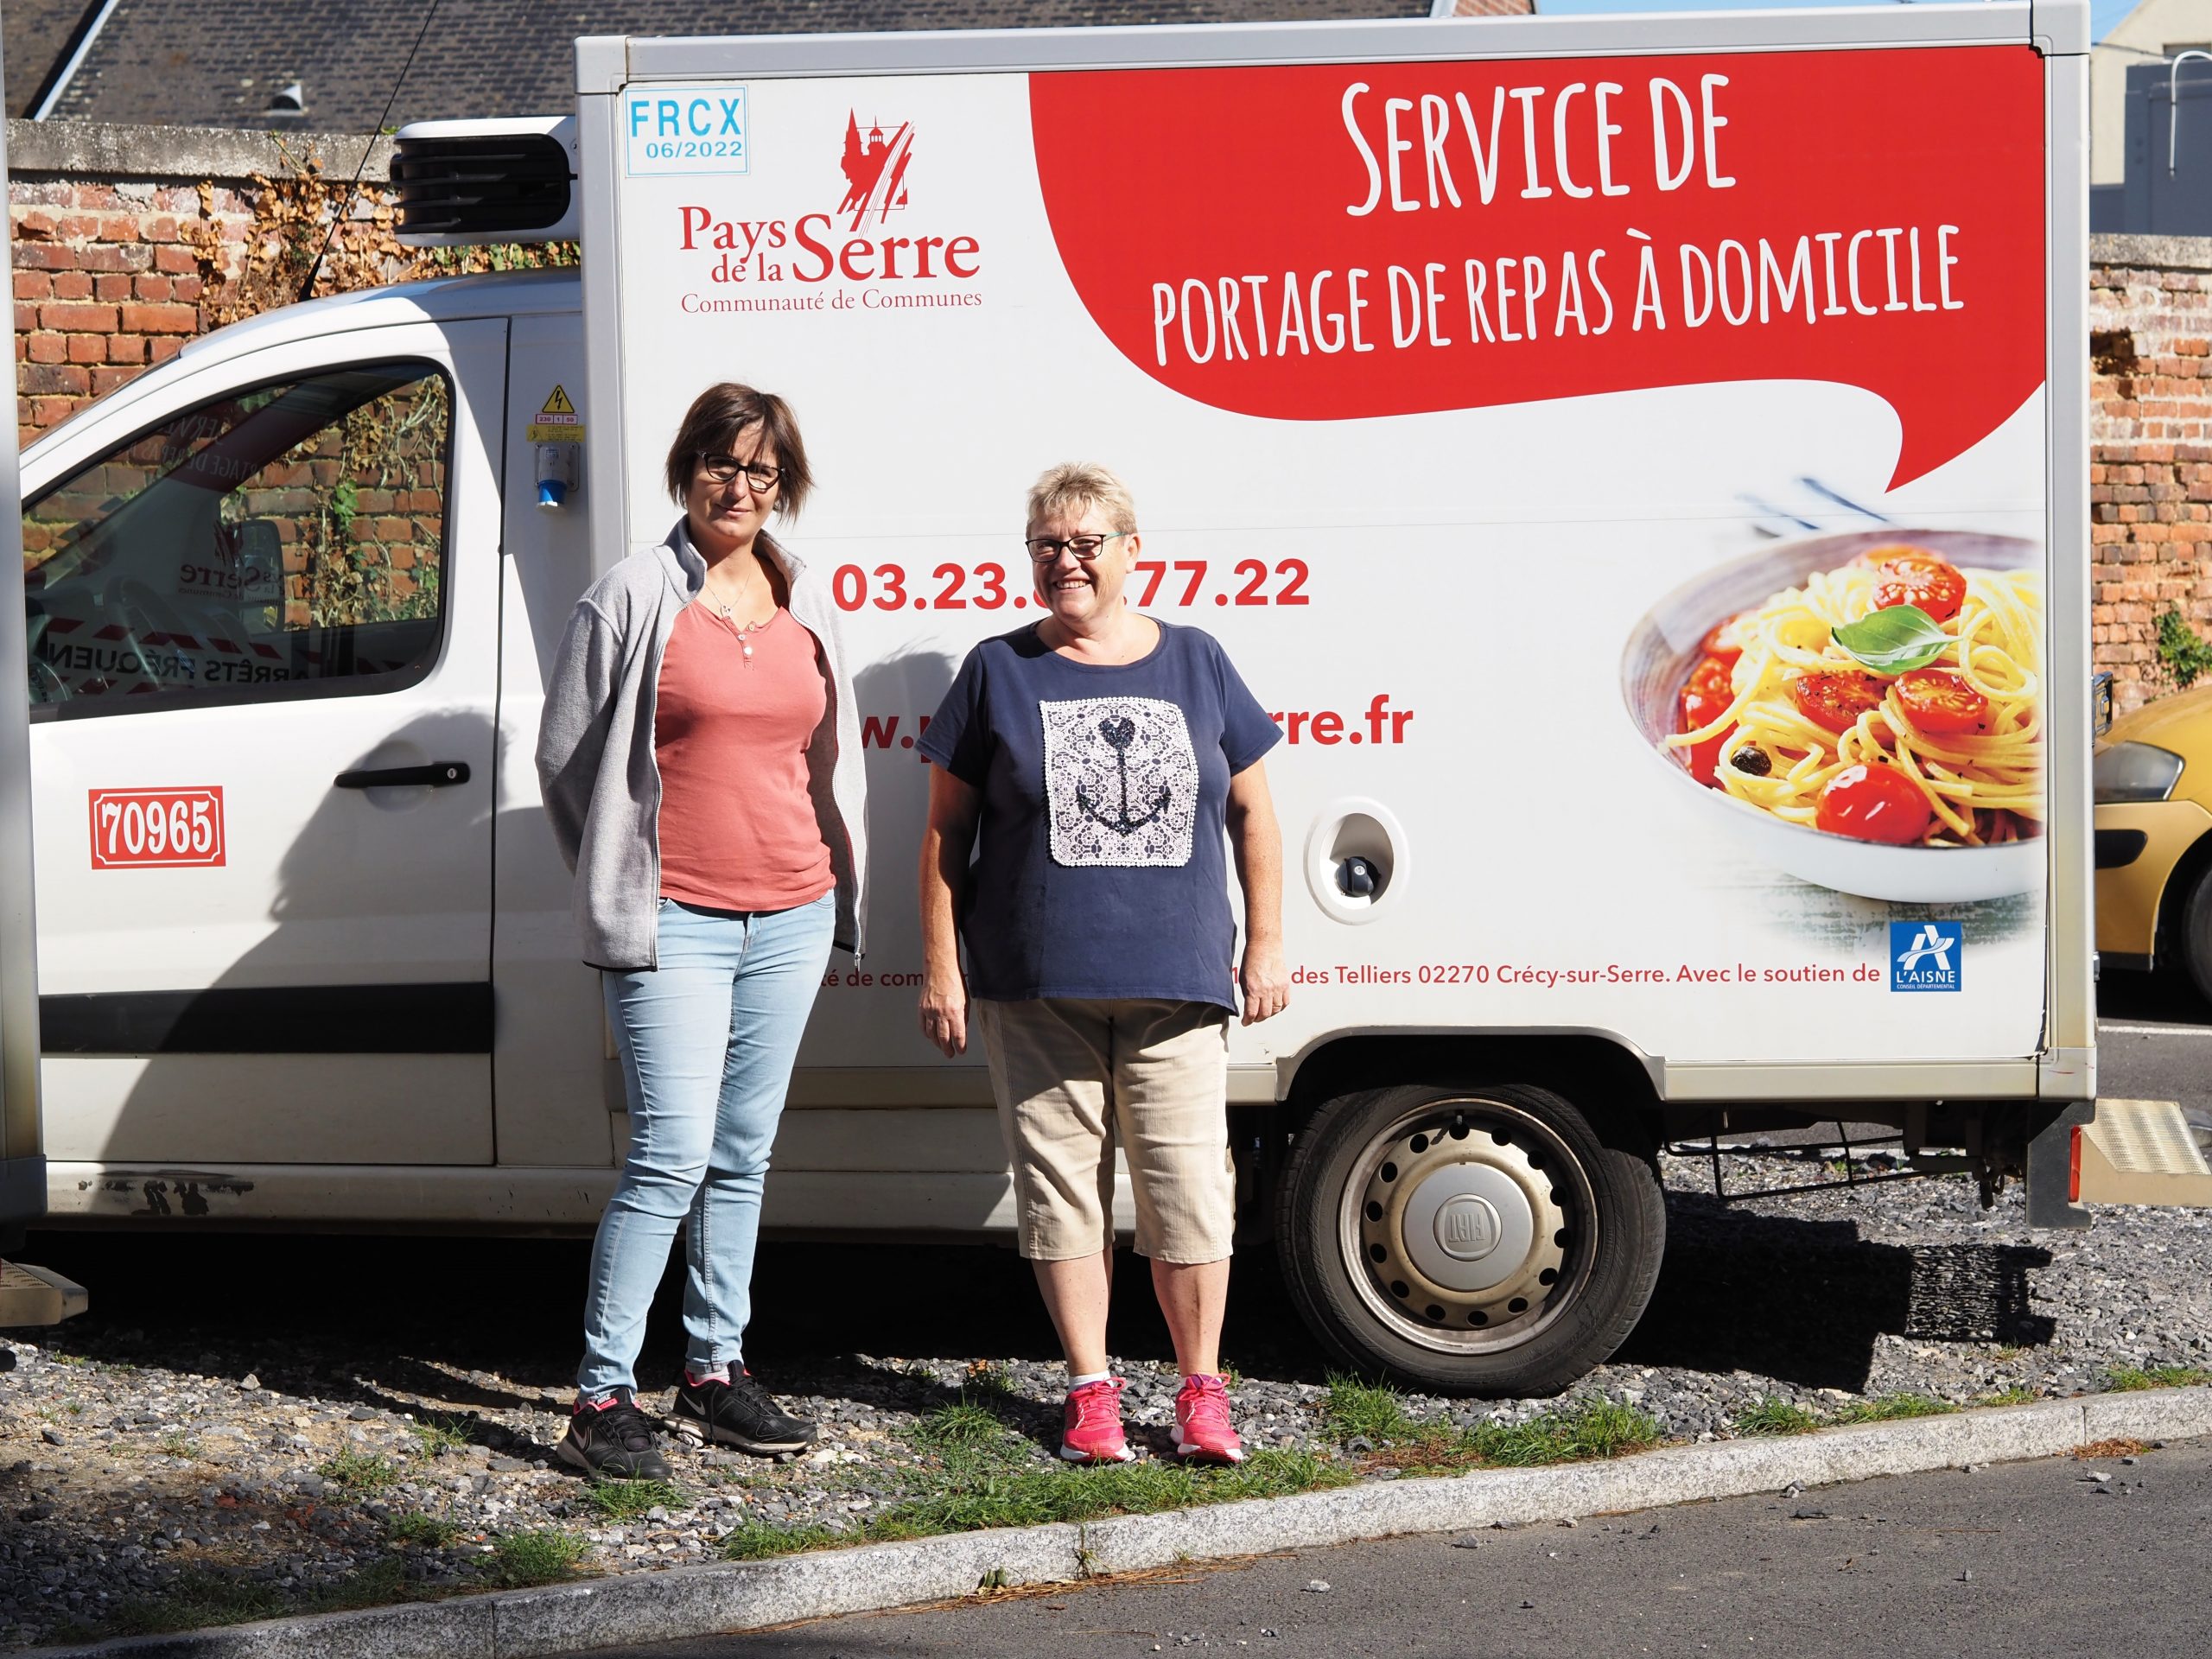 Service de portage pour les repas à domicile - Canet-en-Roussillon